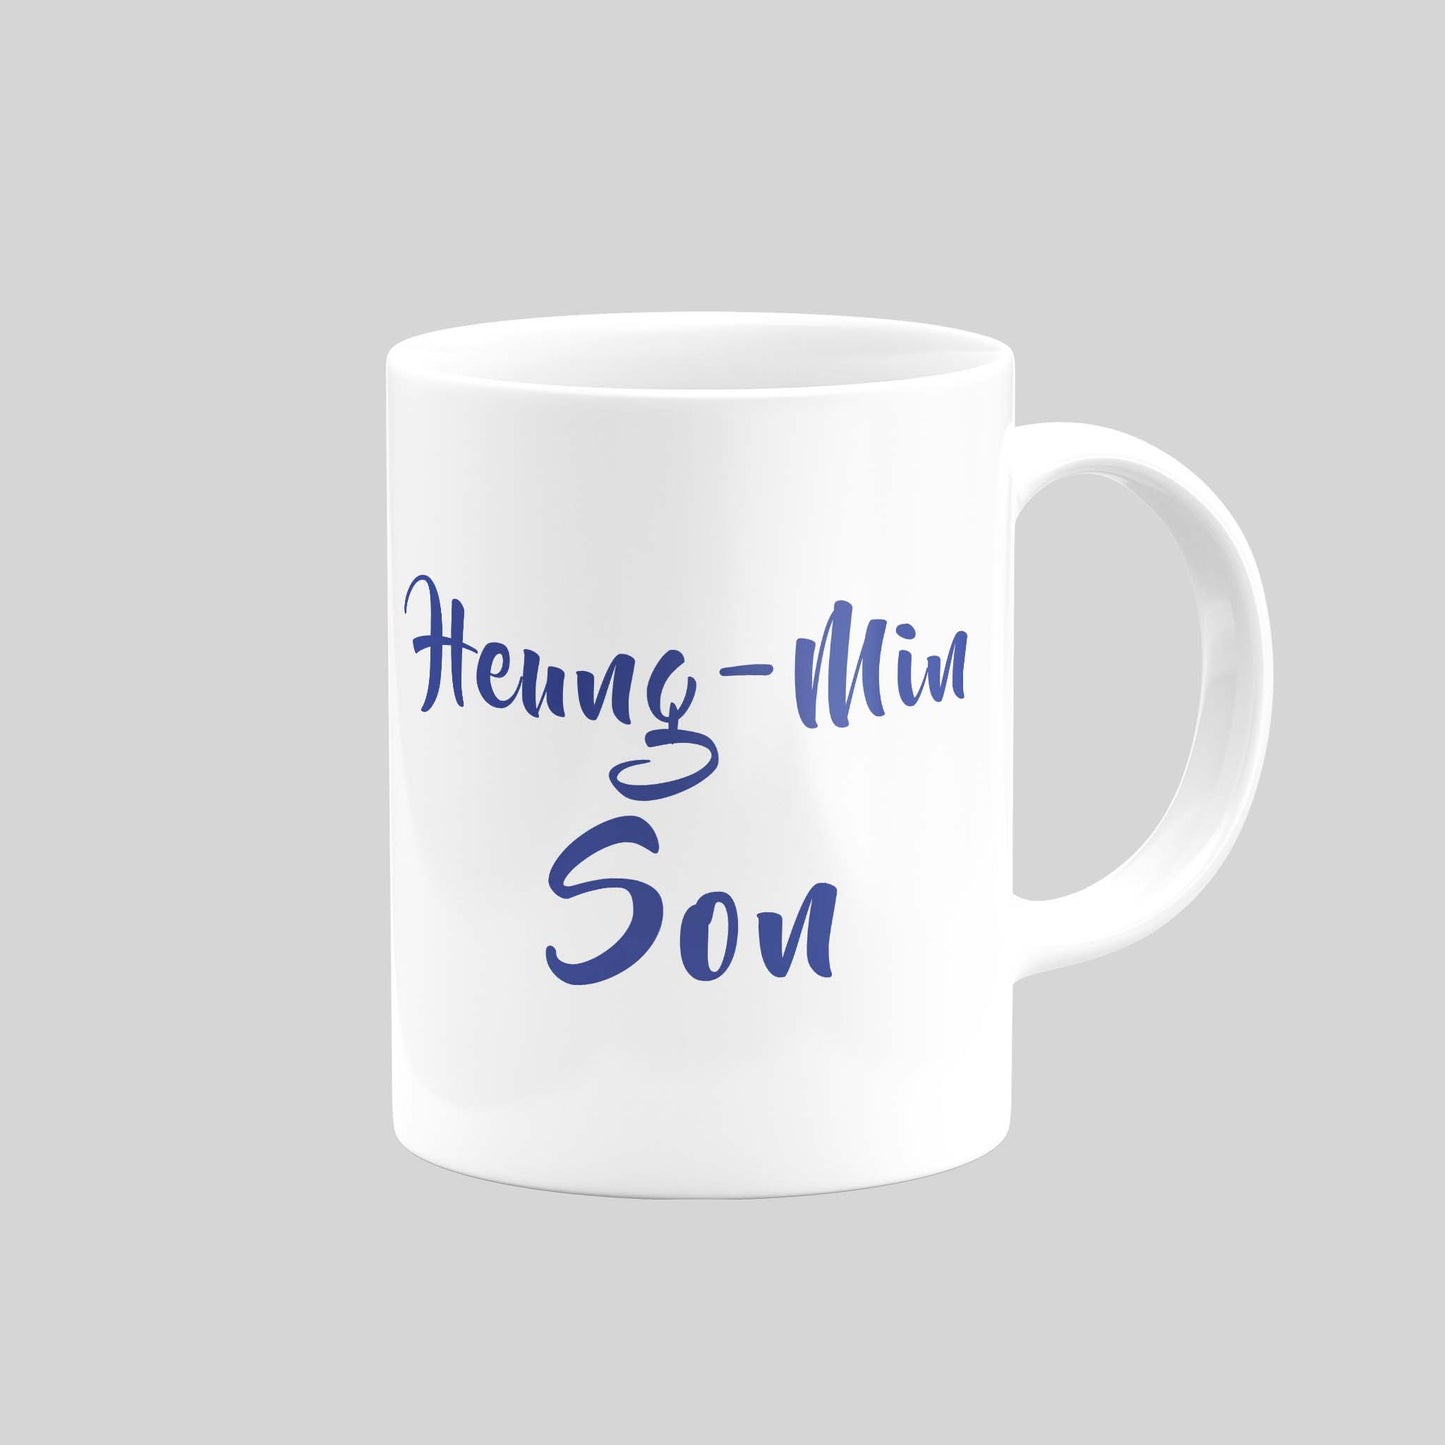 Heung Min Son Mug